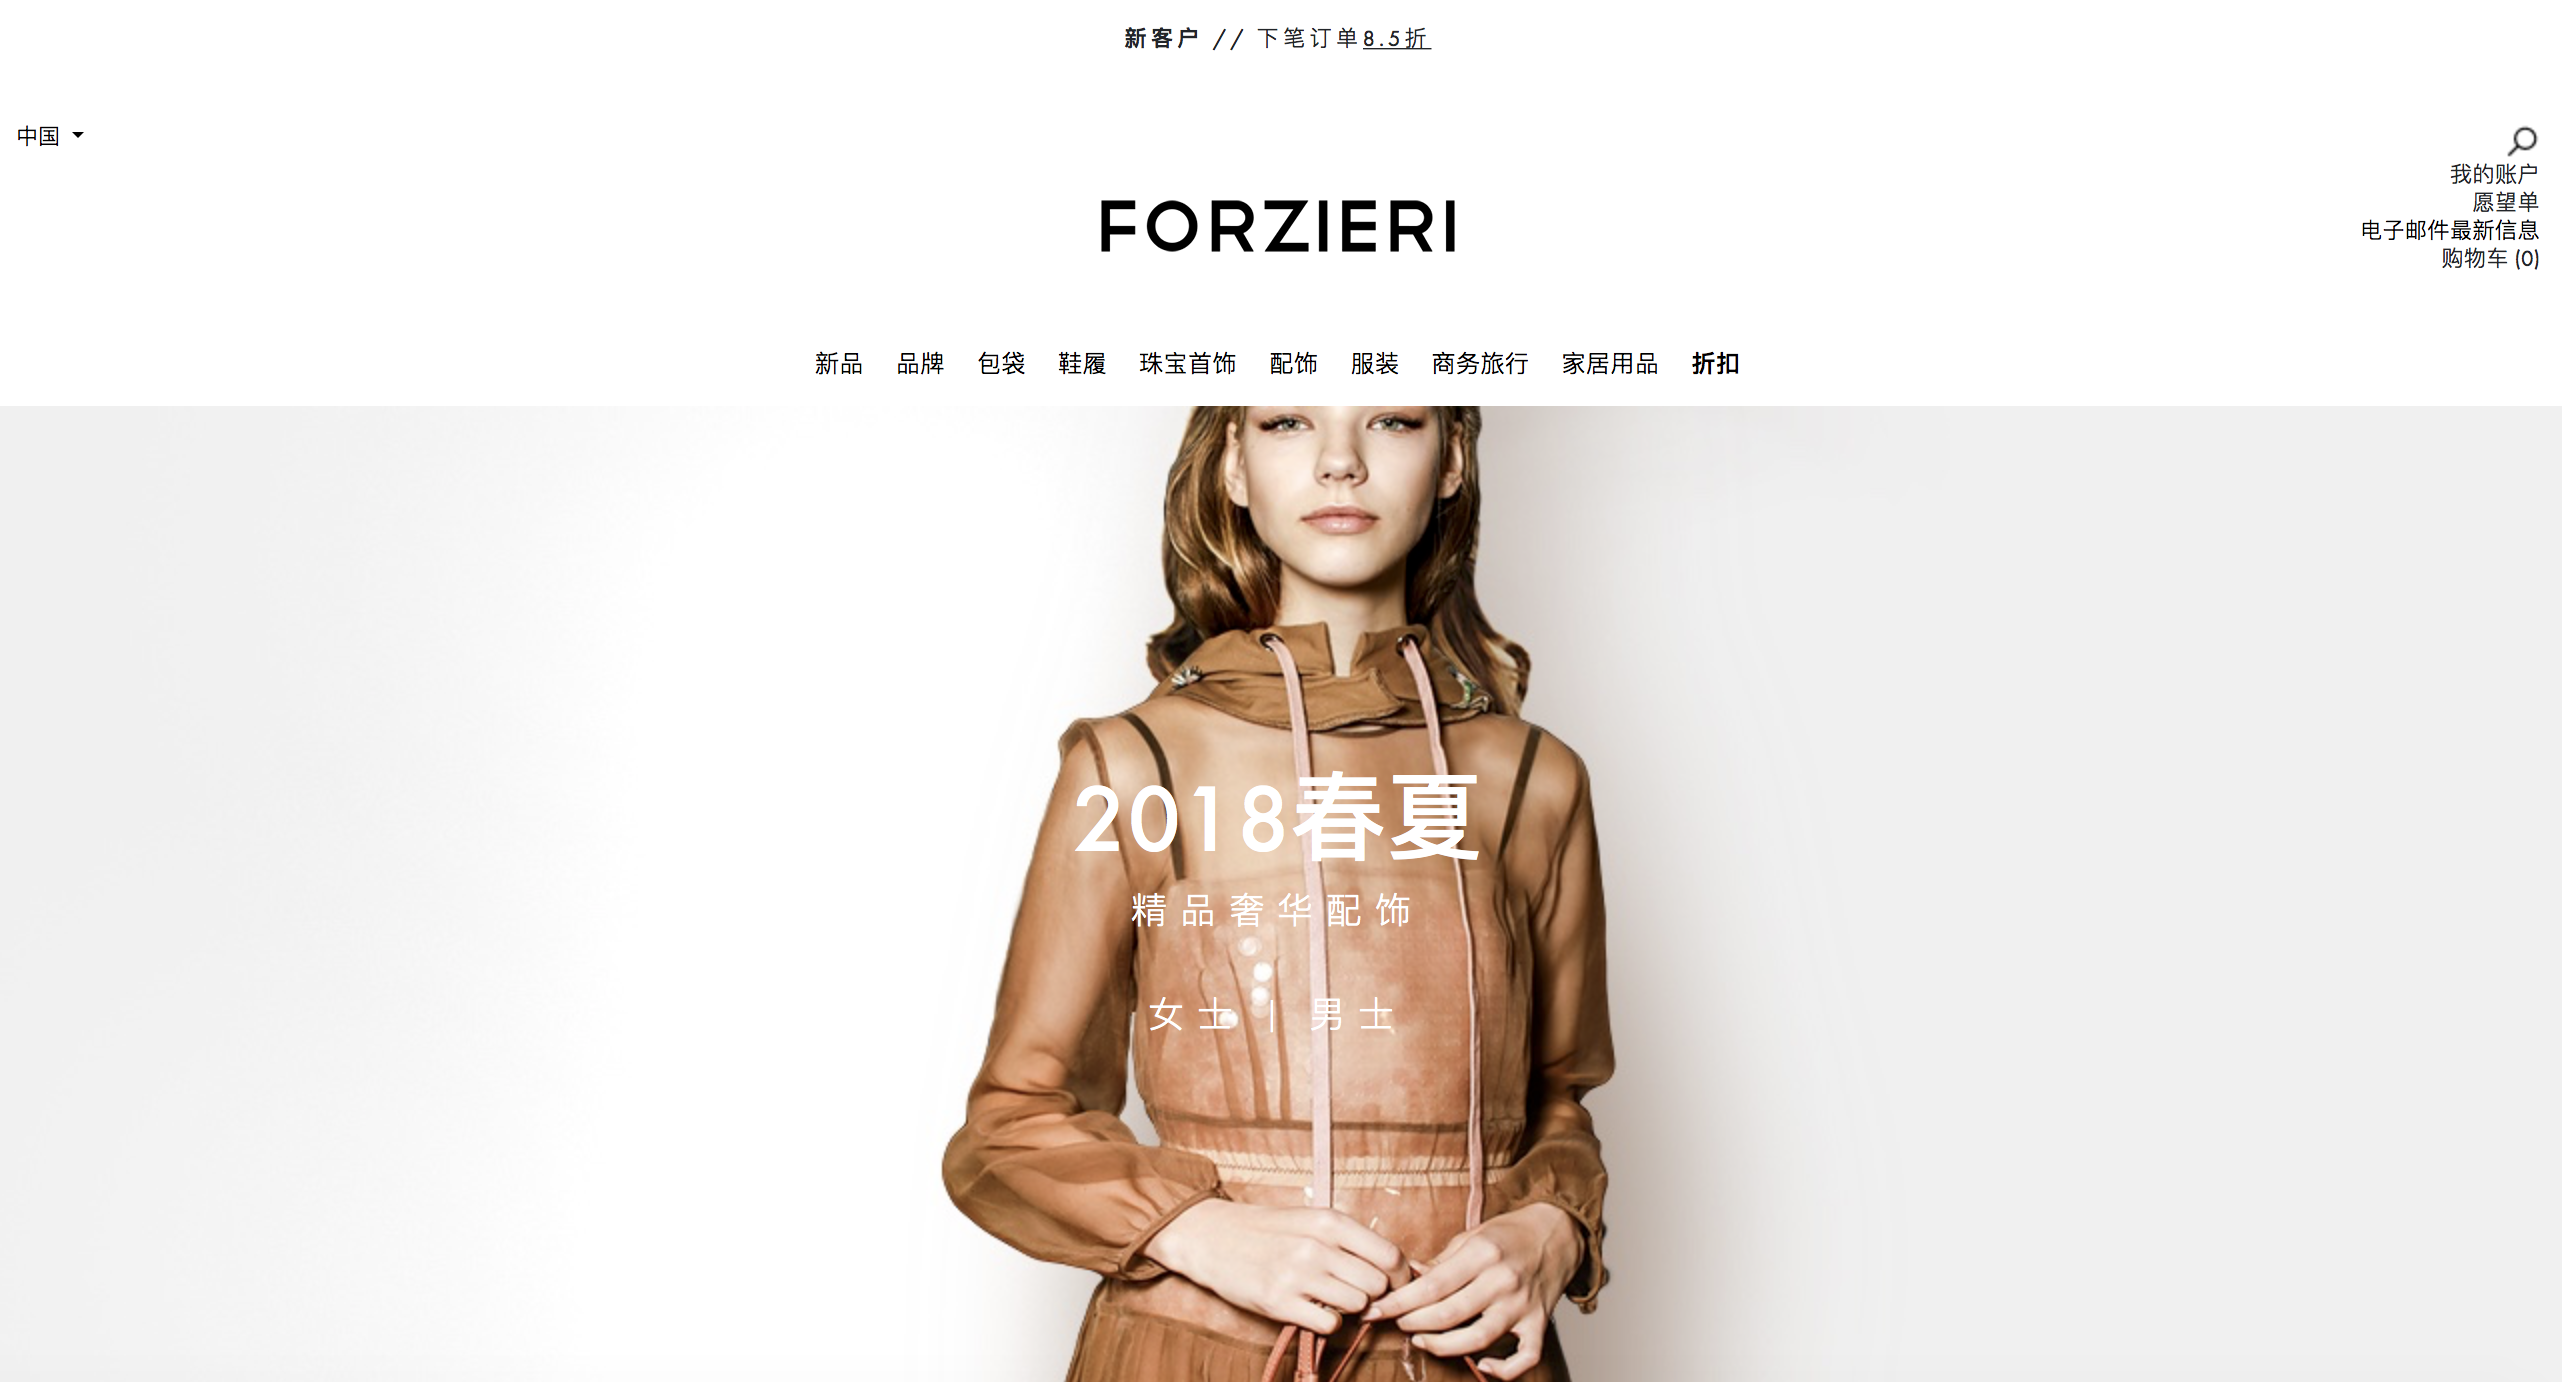 [教學文] Forzieri 網站介紹購物教學及限時專屬折扣碼分享